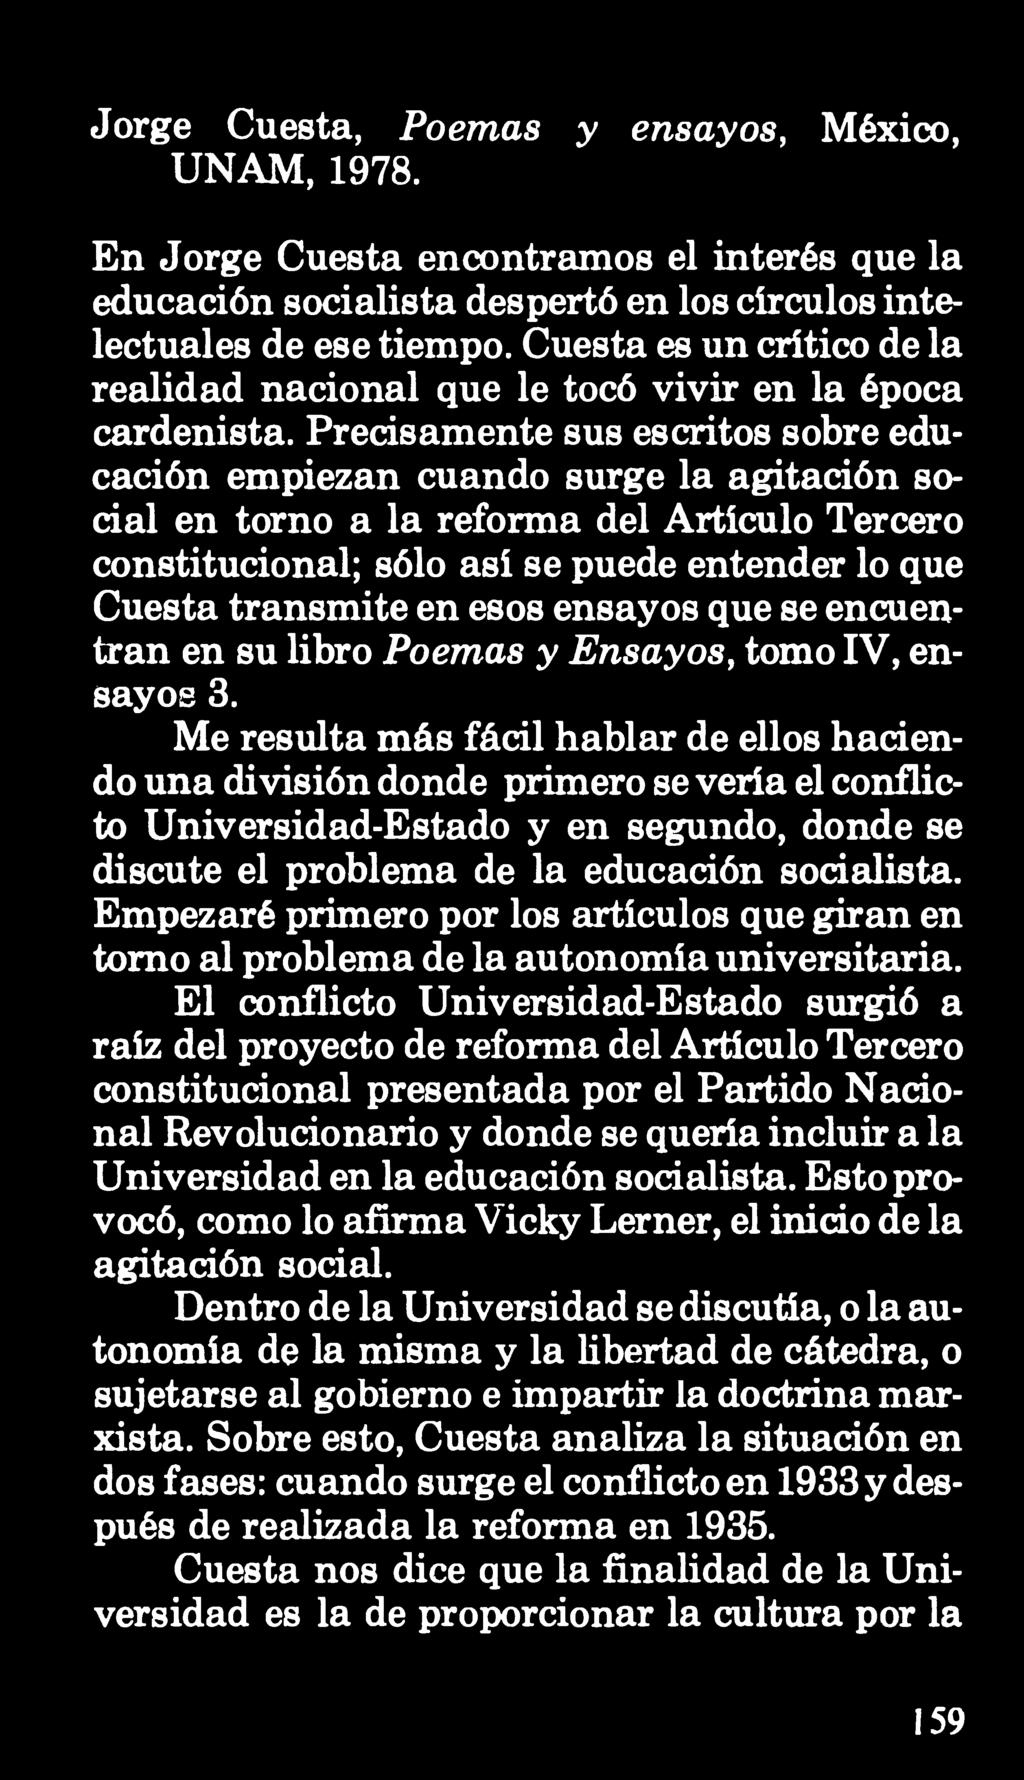 Jorge Cuesta, Poemas y ensayos, México, UNAM, 1978. En Jorge Cuesta encontramos el interés que la educación socialista despertó en los círculos intelectuales de ese tiempo.